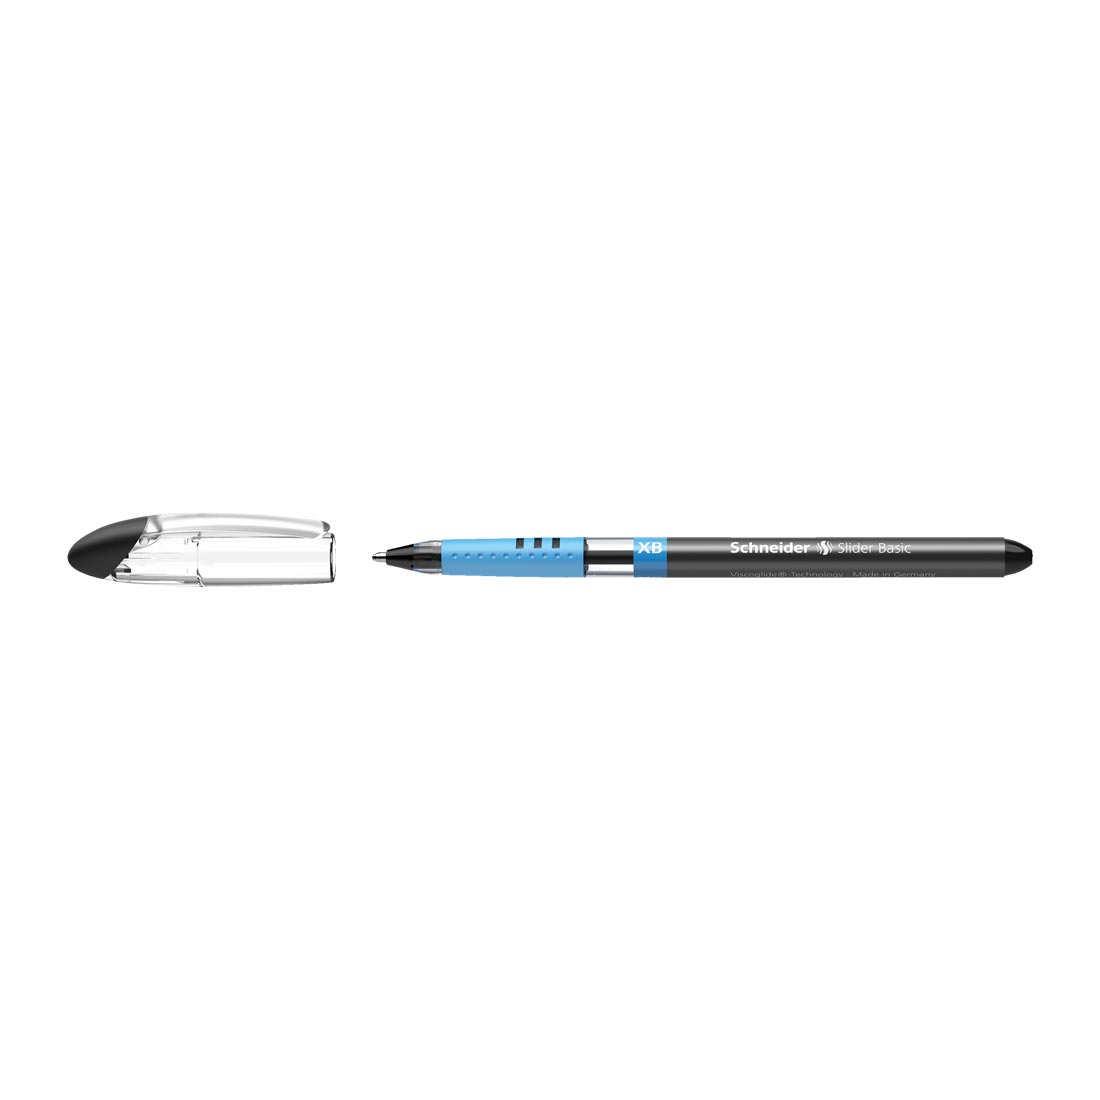 Slider BASIC Ballpoint Pen XB, Box of 10#ink-colour_black